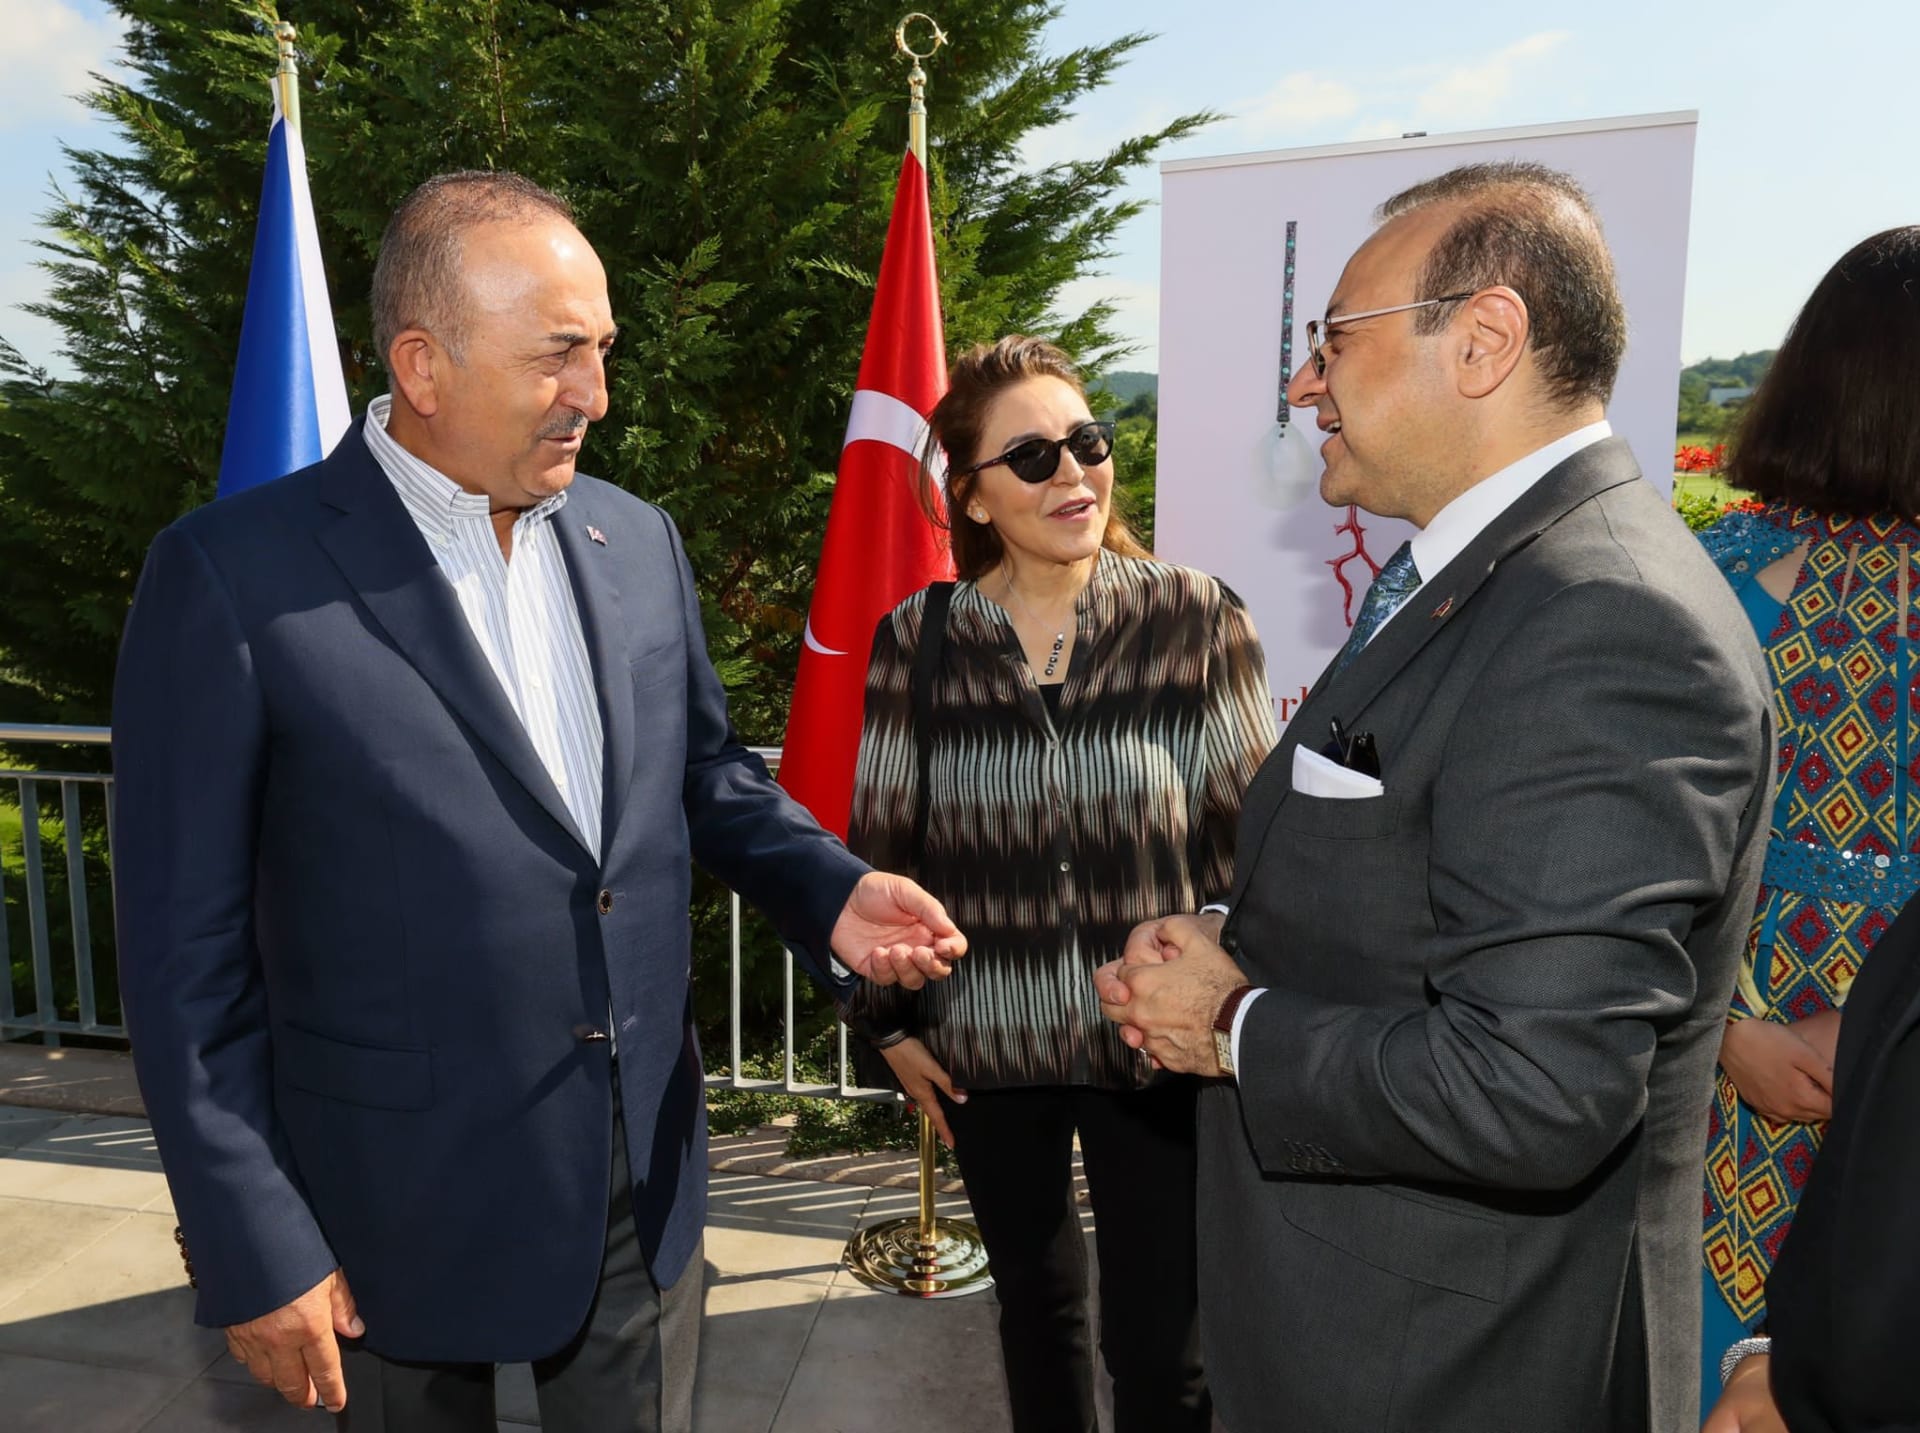 Turecký ministr zahraničí Mevlüt avuoglu zavítal během oficiální návštěvy Česka také na turecký festival v Berouně, který pořádá turecké velvyslanectví v Česku